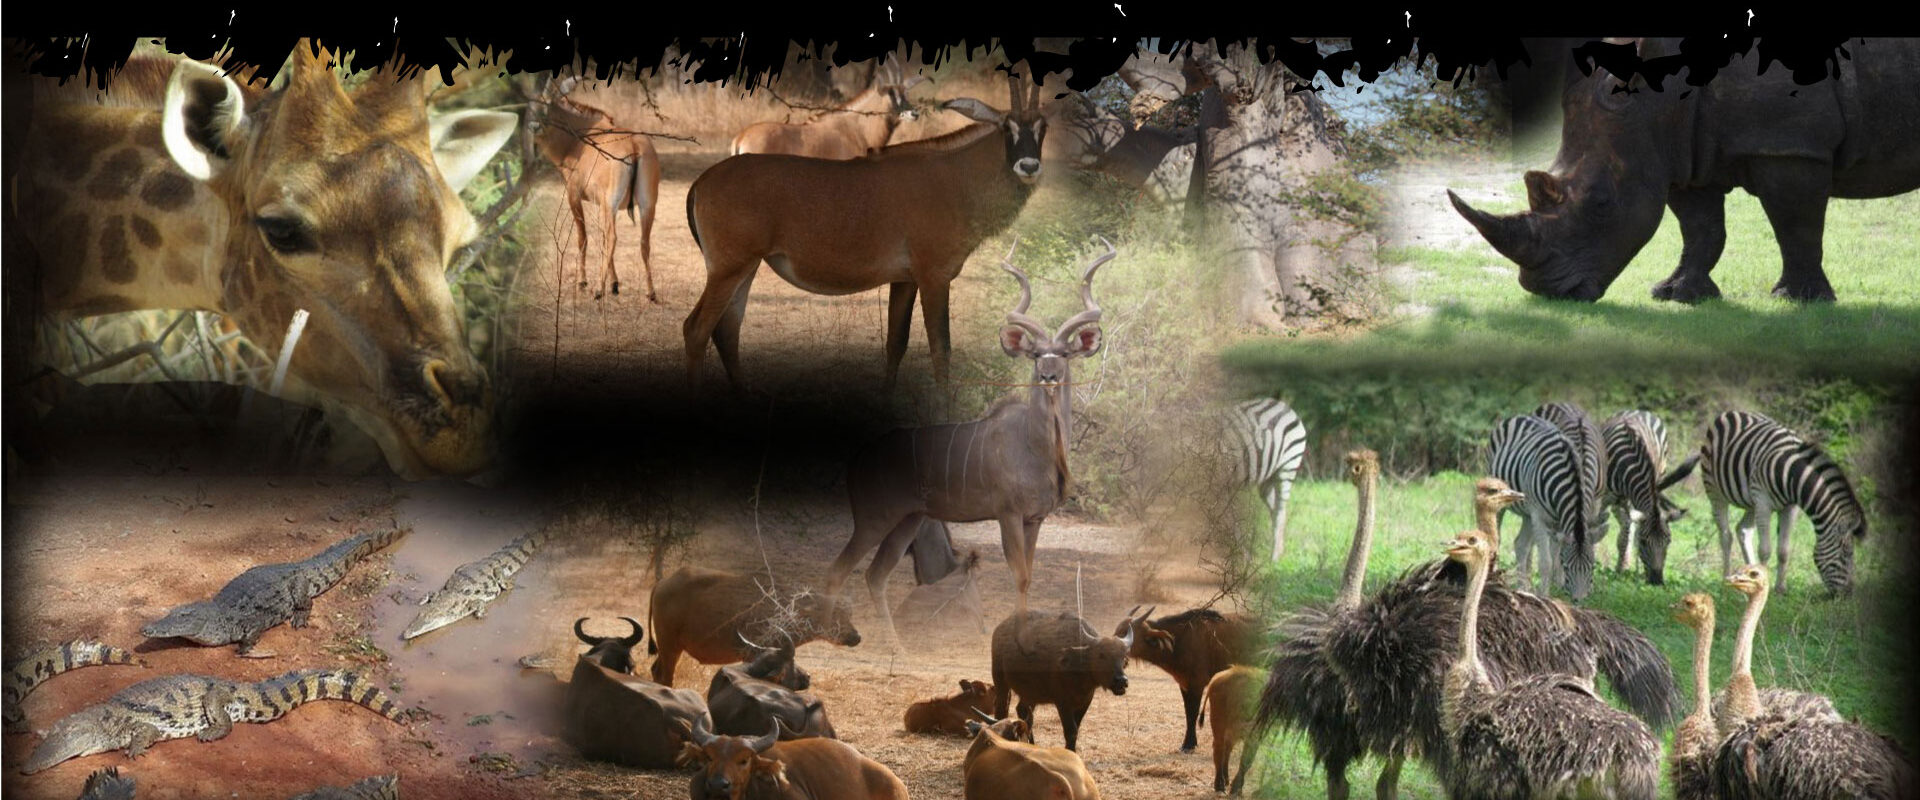 Safari: Reserve of Bandia